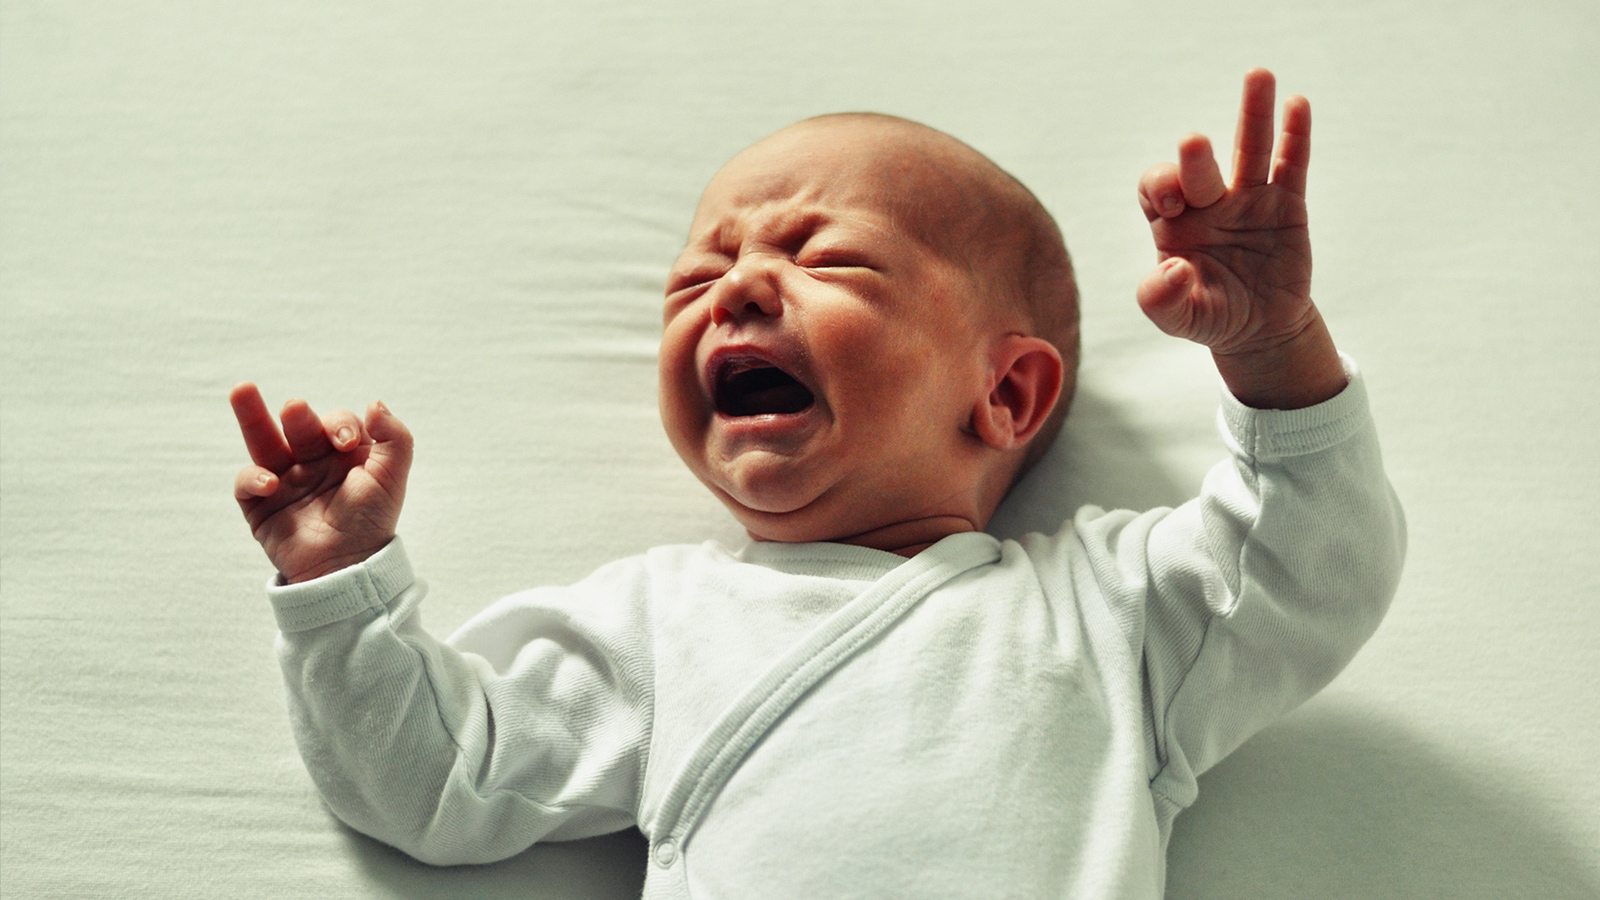 ‪لا يستطيع الرضيع التعبير عن نفسه سوى بالبكاء‬ (بيكسابي)